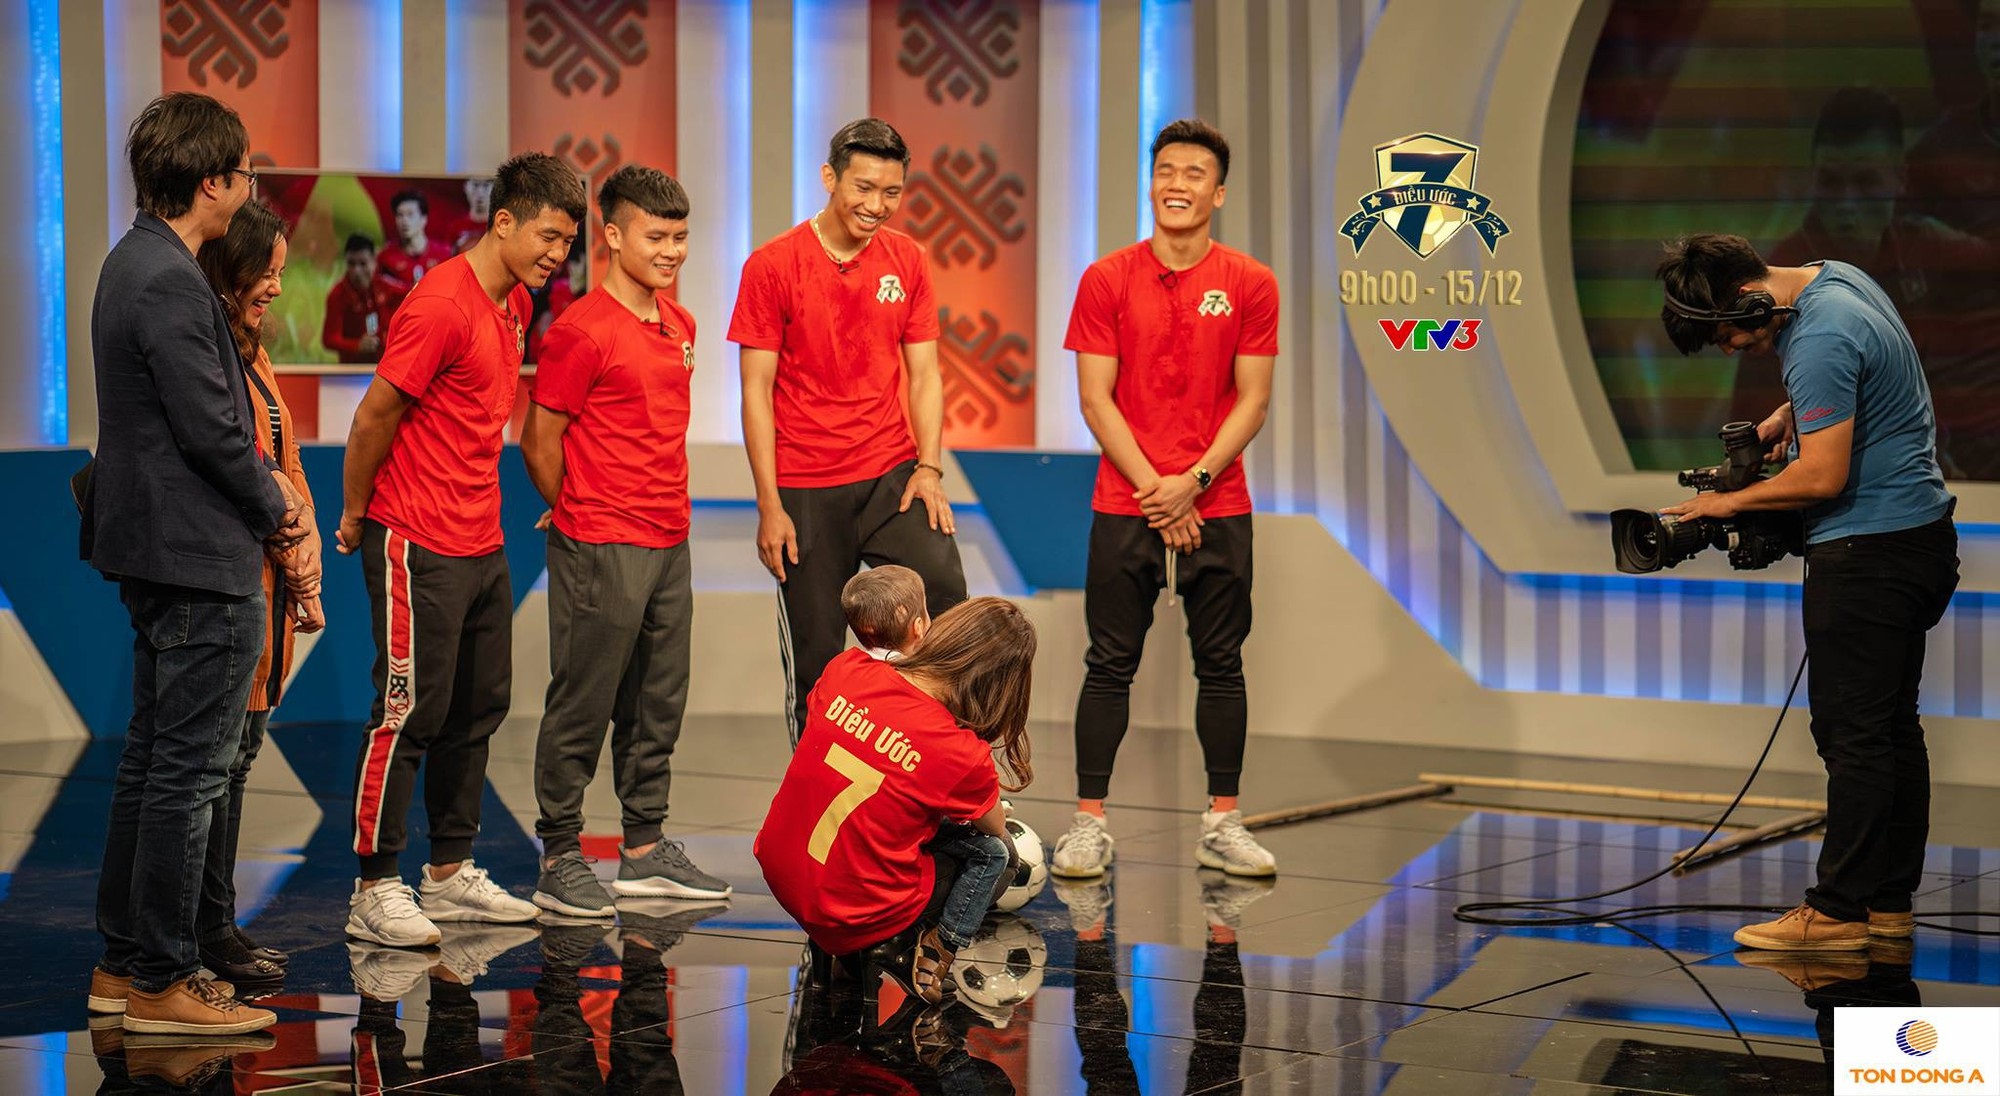 Đức Chinh, Quang Hải rơi lệ trước trận chung kết AFF Cup: ‘Chúng em sẽ chiến đấu hết mình để cố gắng mang cúp vàng về’ - Ảnh 3